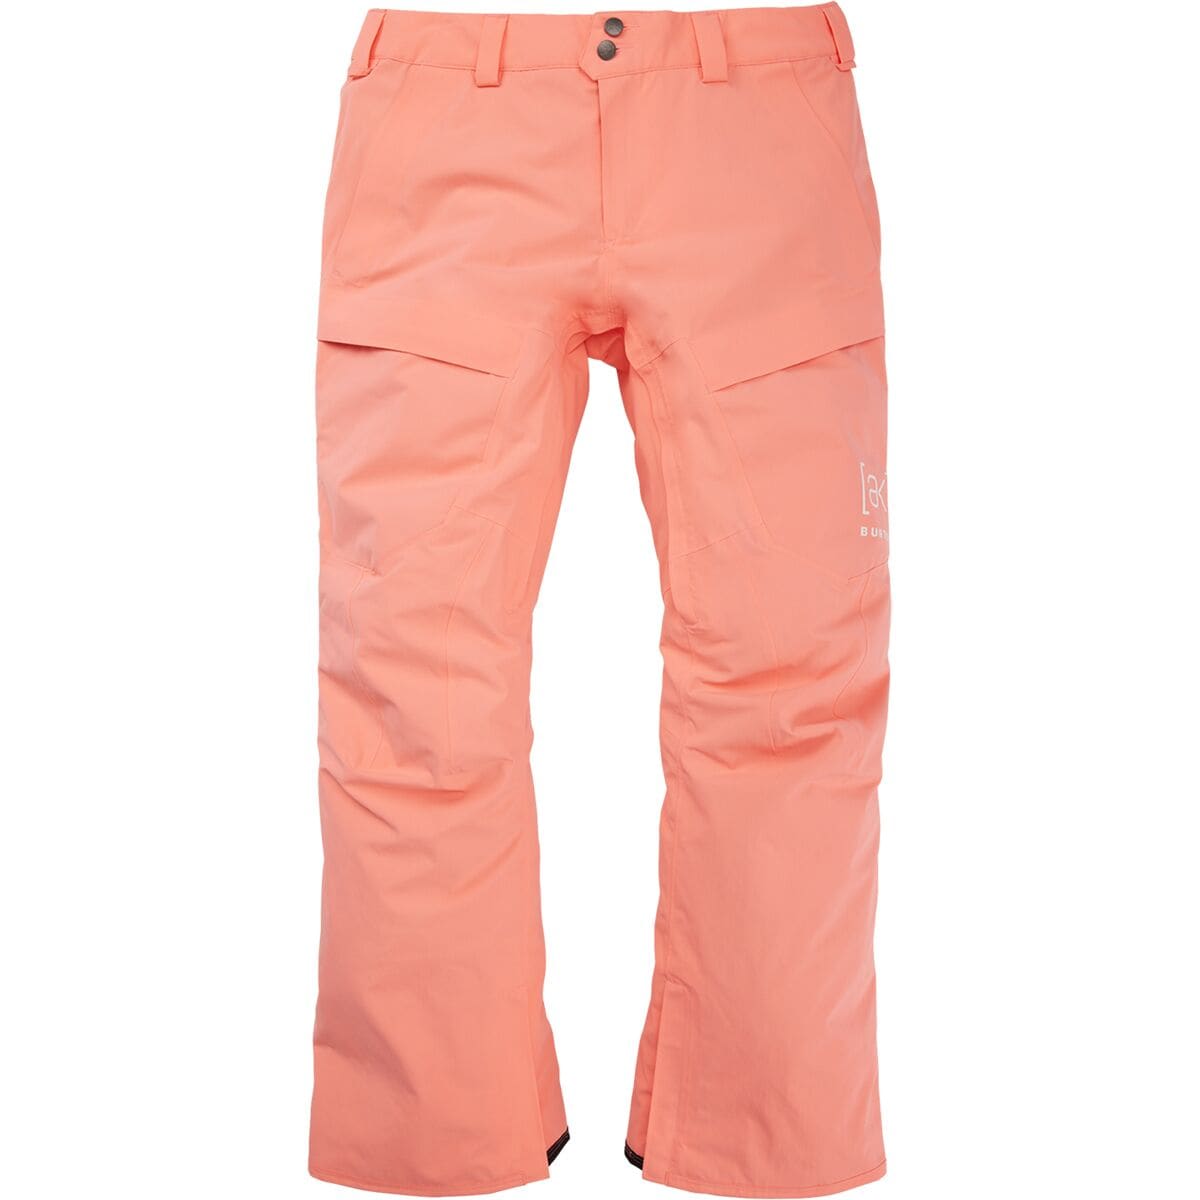 Burton AK GORE-TEX Swash Pant - Men's Reef Pink